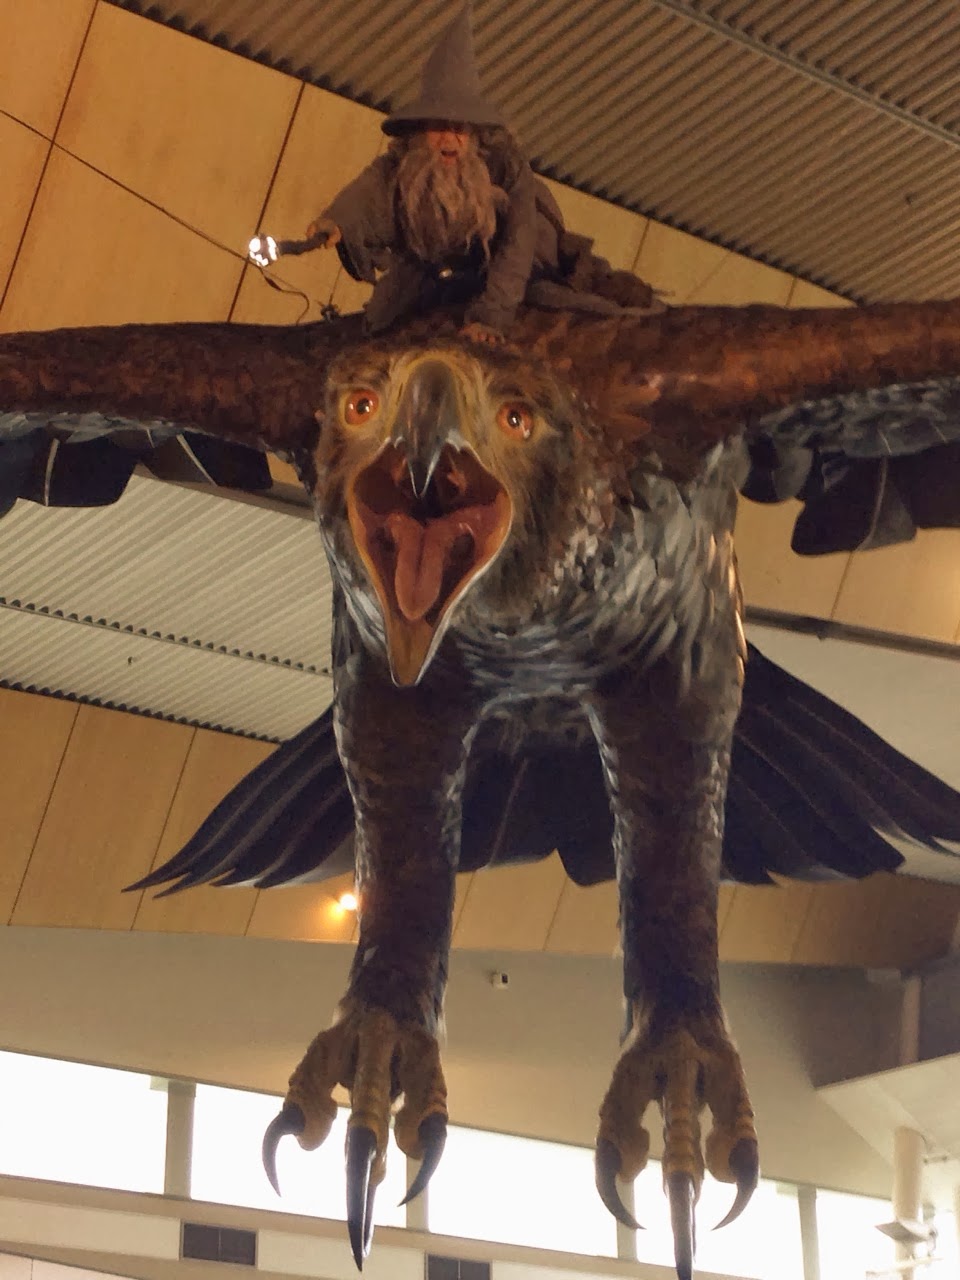 El hobbit llega al aeropuerto de Nueva Zelanda - Tolkien en Rivendel